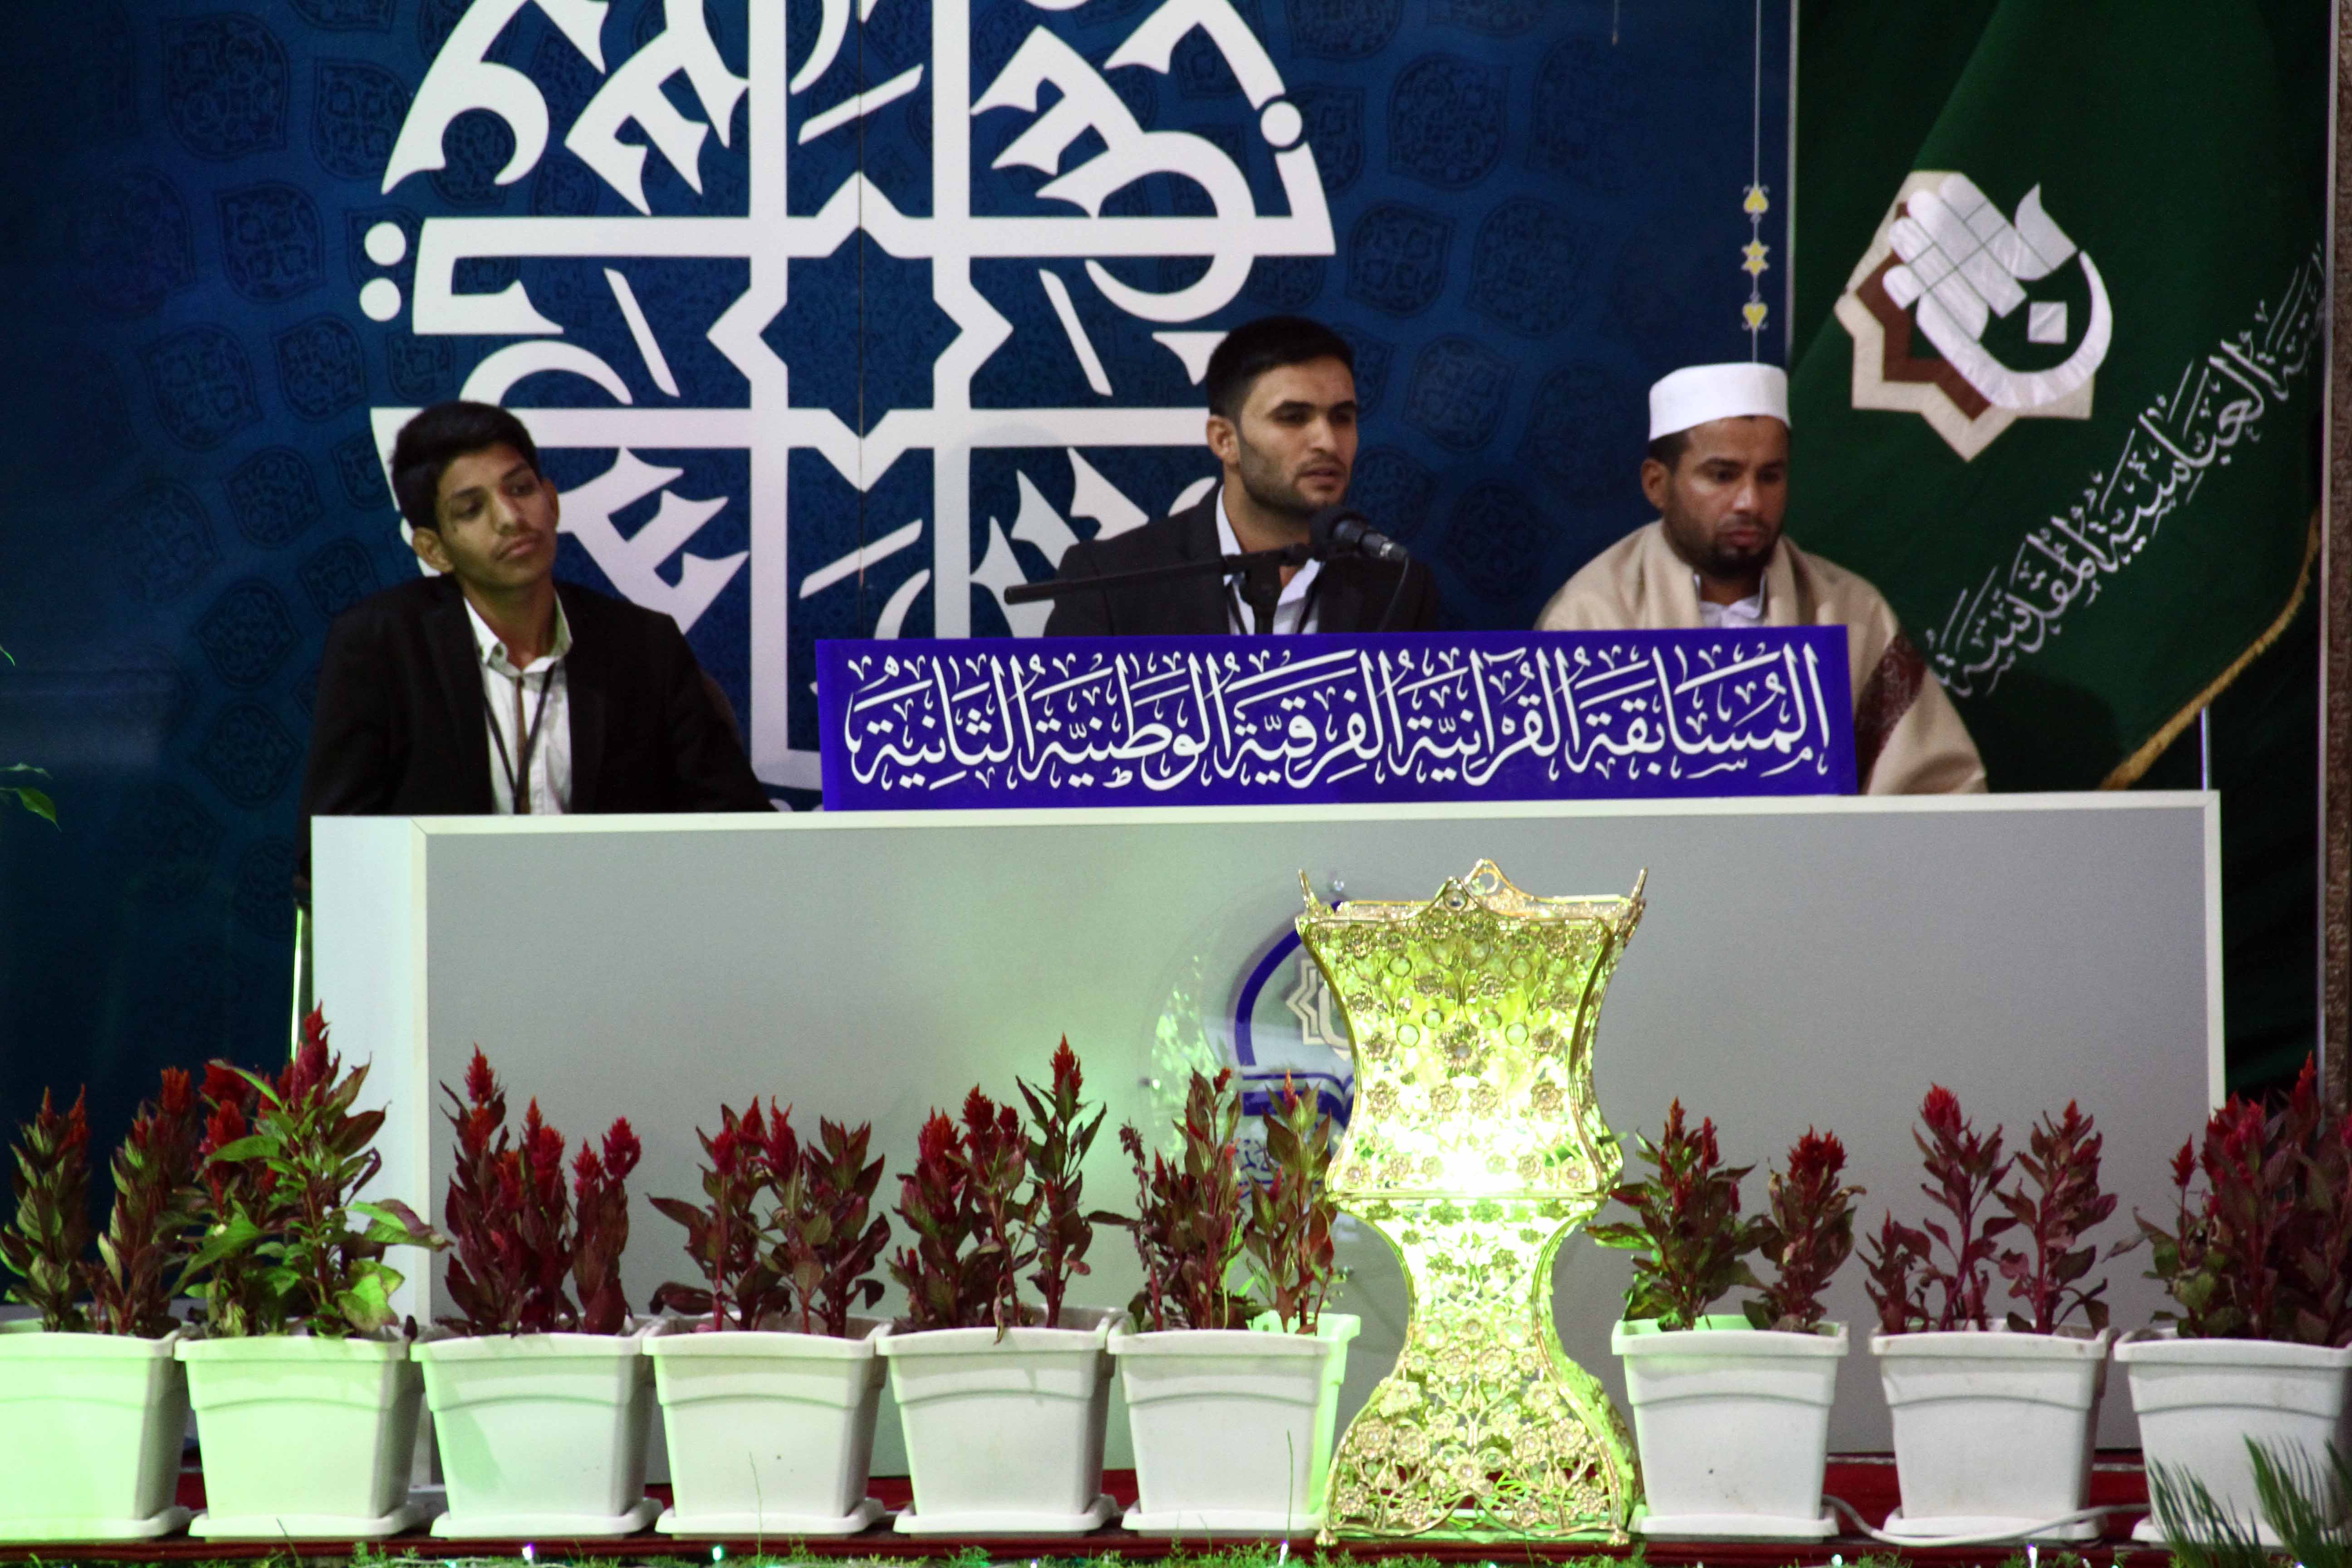 فوز فريق واسط على فريق الديوانية ، وفريق ذي قار  على فريق نينوى في المرحلة الأولى من المسابقة القرآنية الفرقية الوطنية الثانية.. 